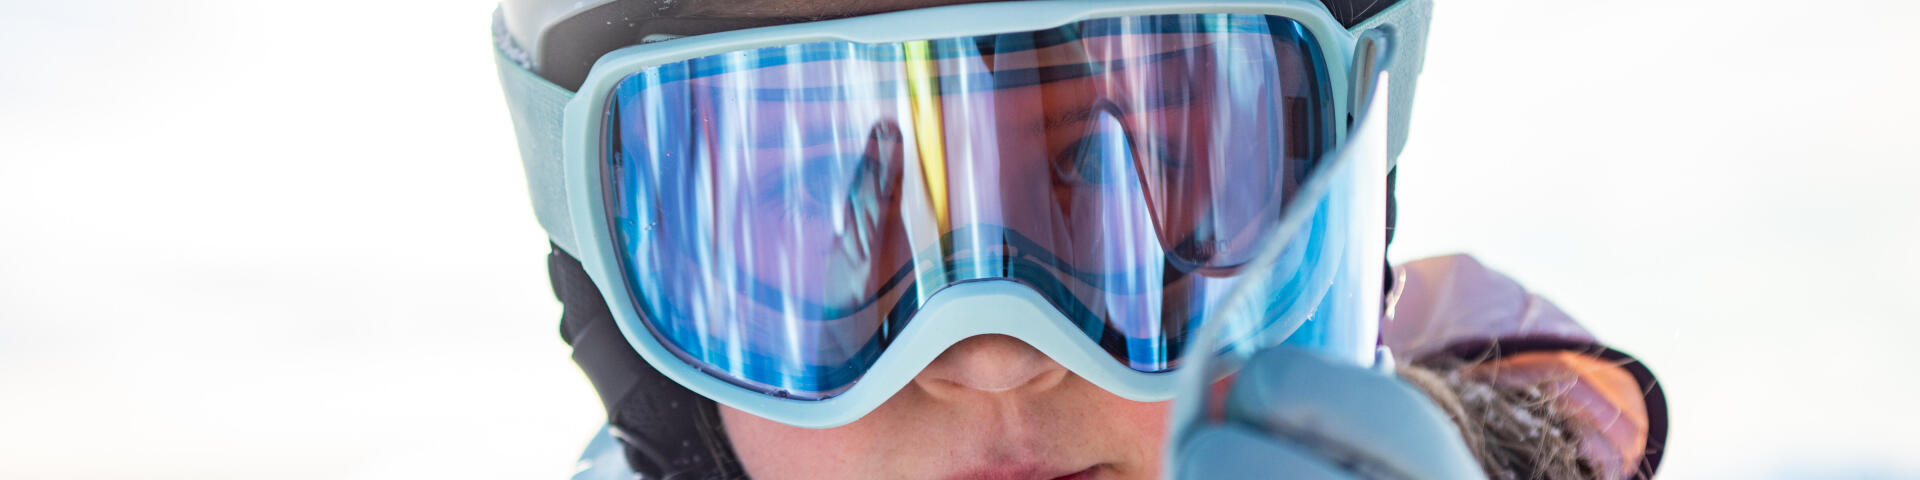 woman wearing ski goggles